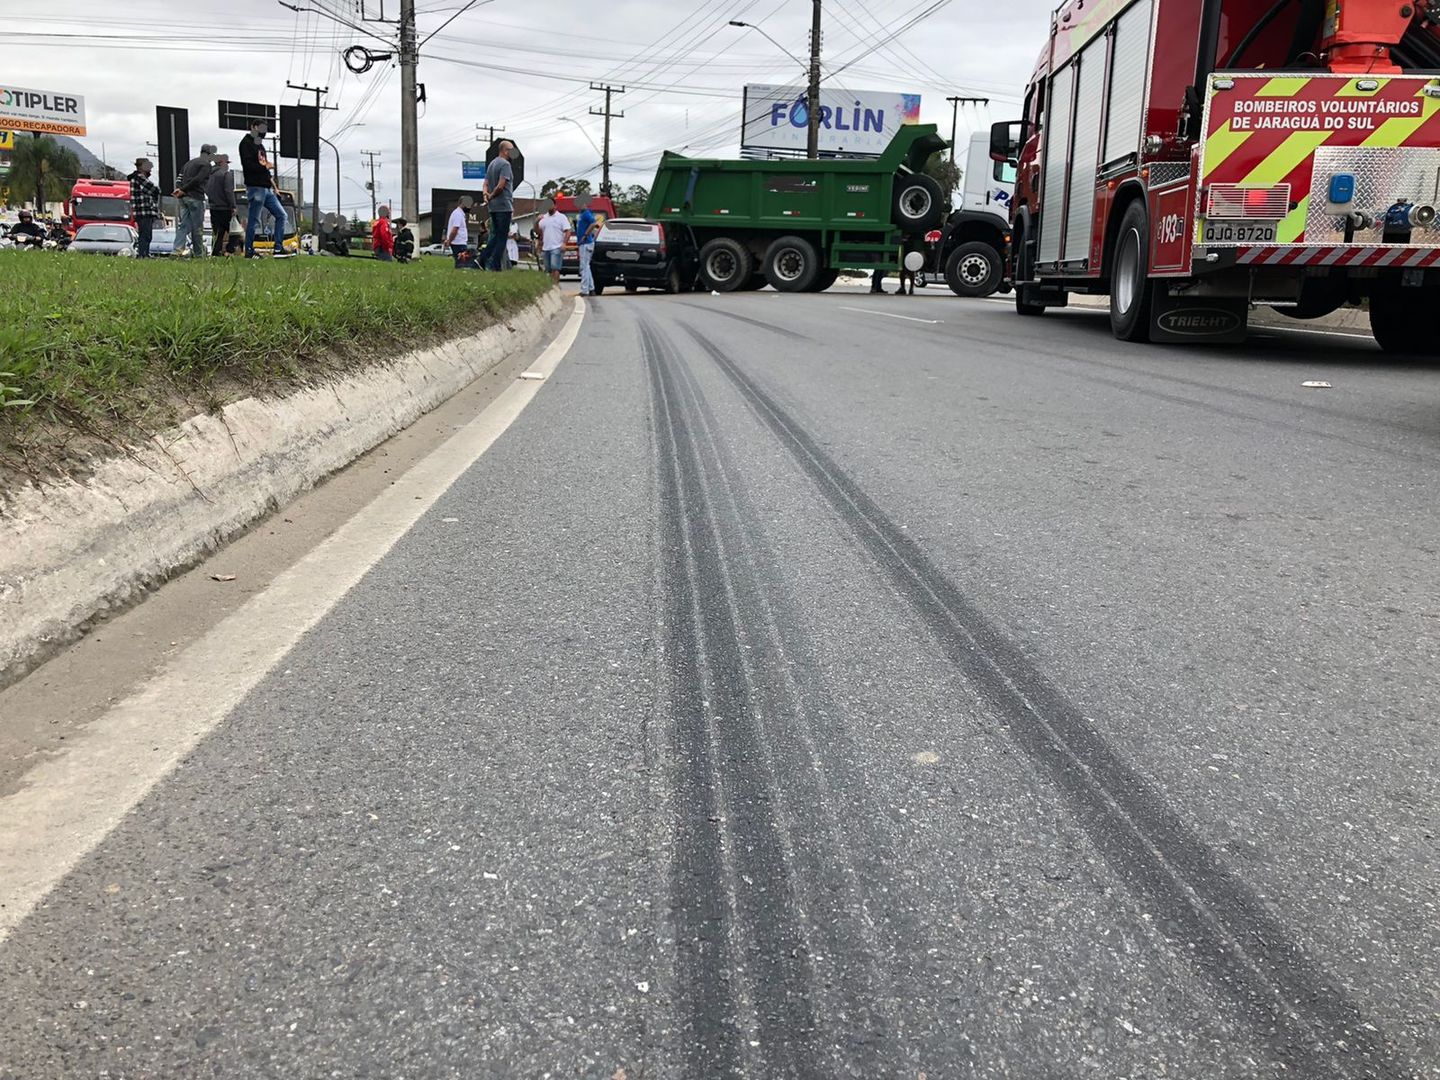 Após batida, carro fica preso embaixo de caminhão em Jaraguá do Sul